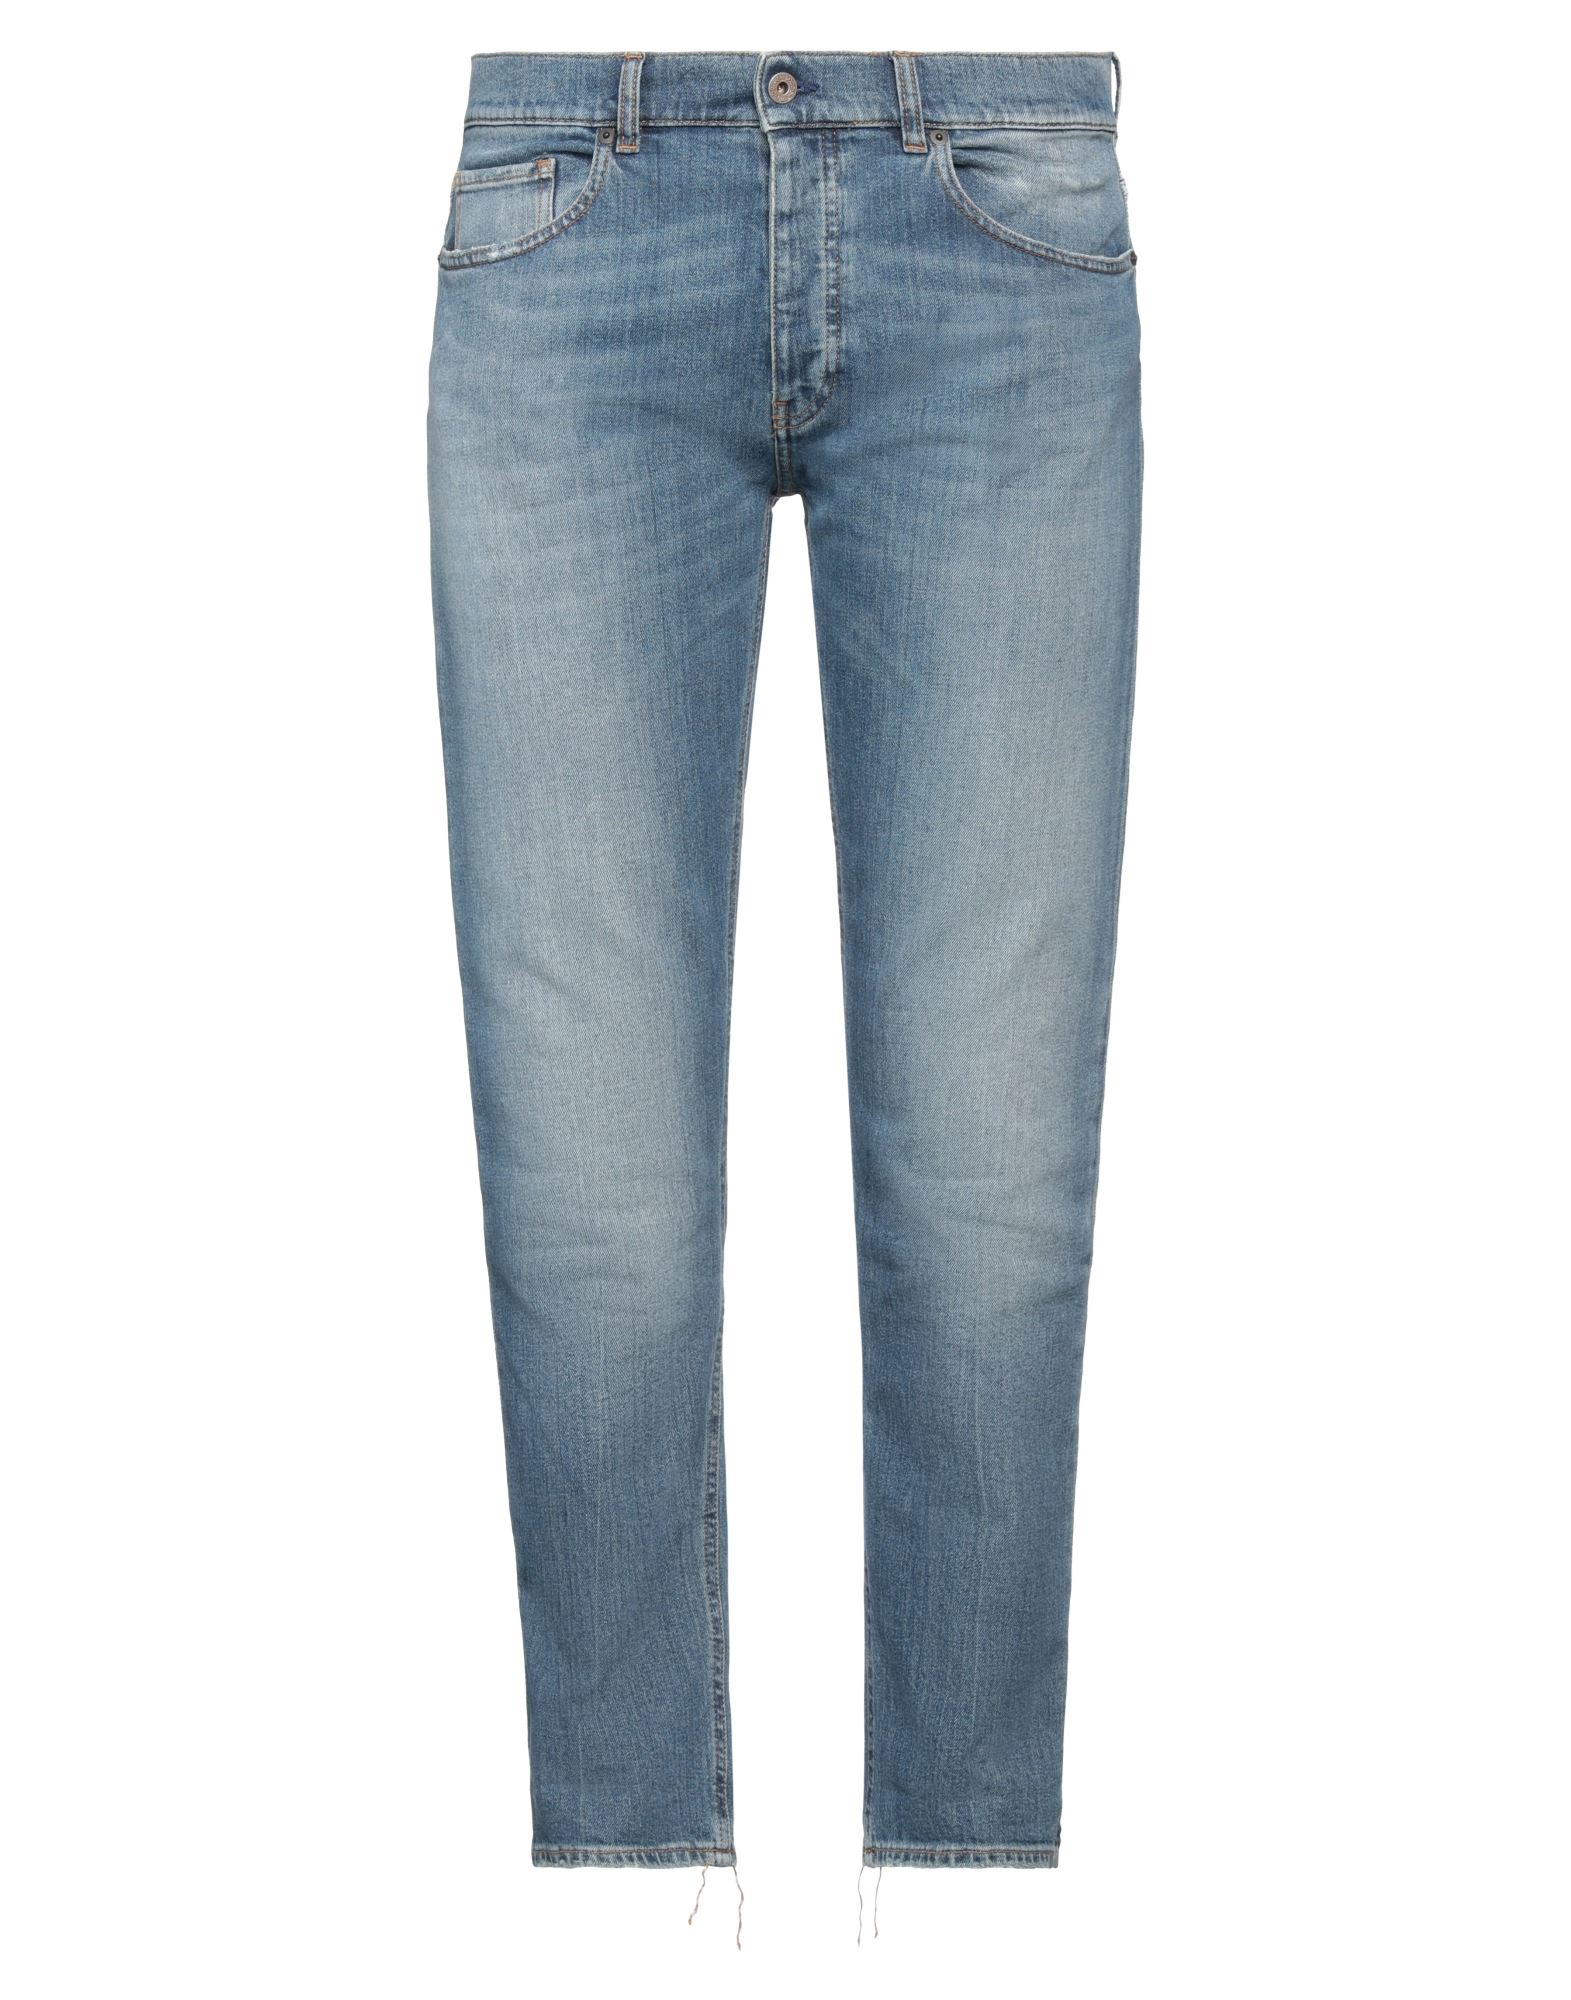 Pence Man Jeans Blue Size 38 Cotton, Elastane